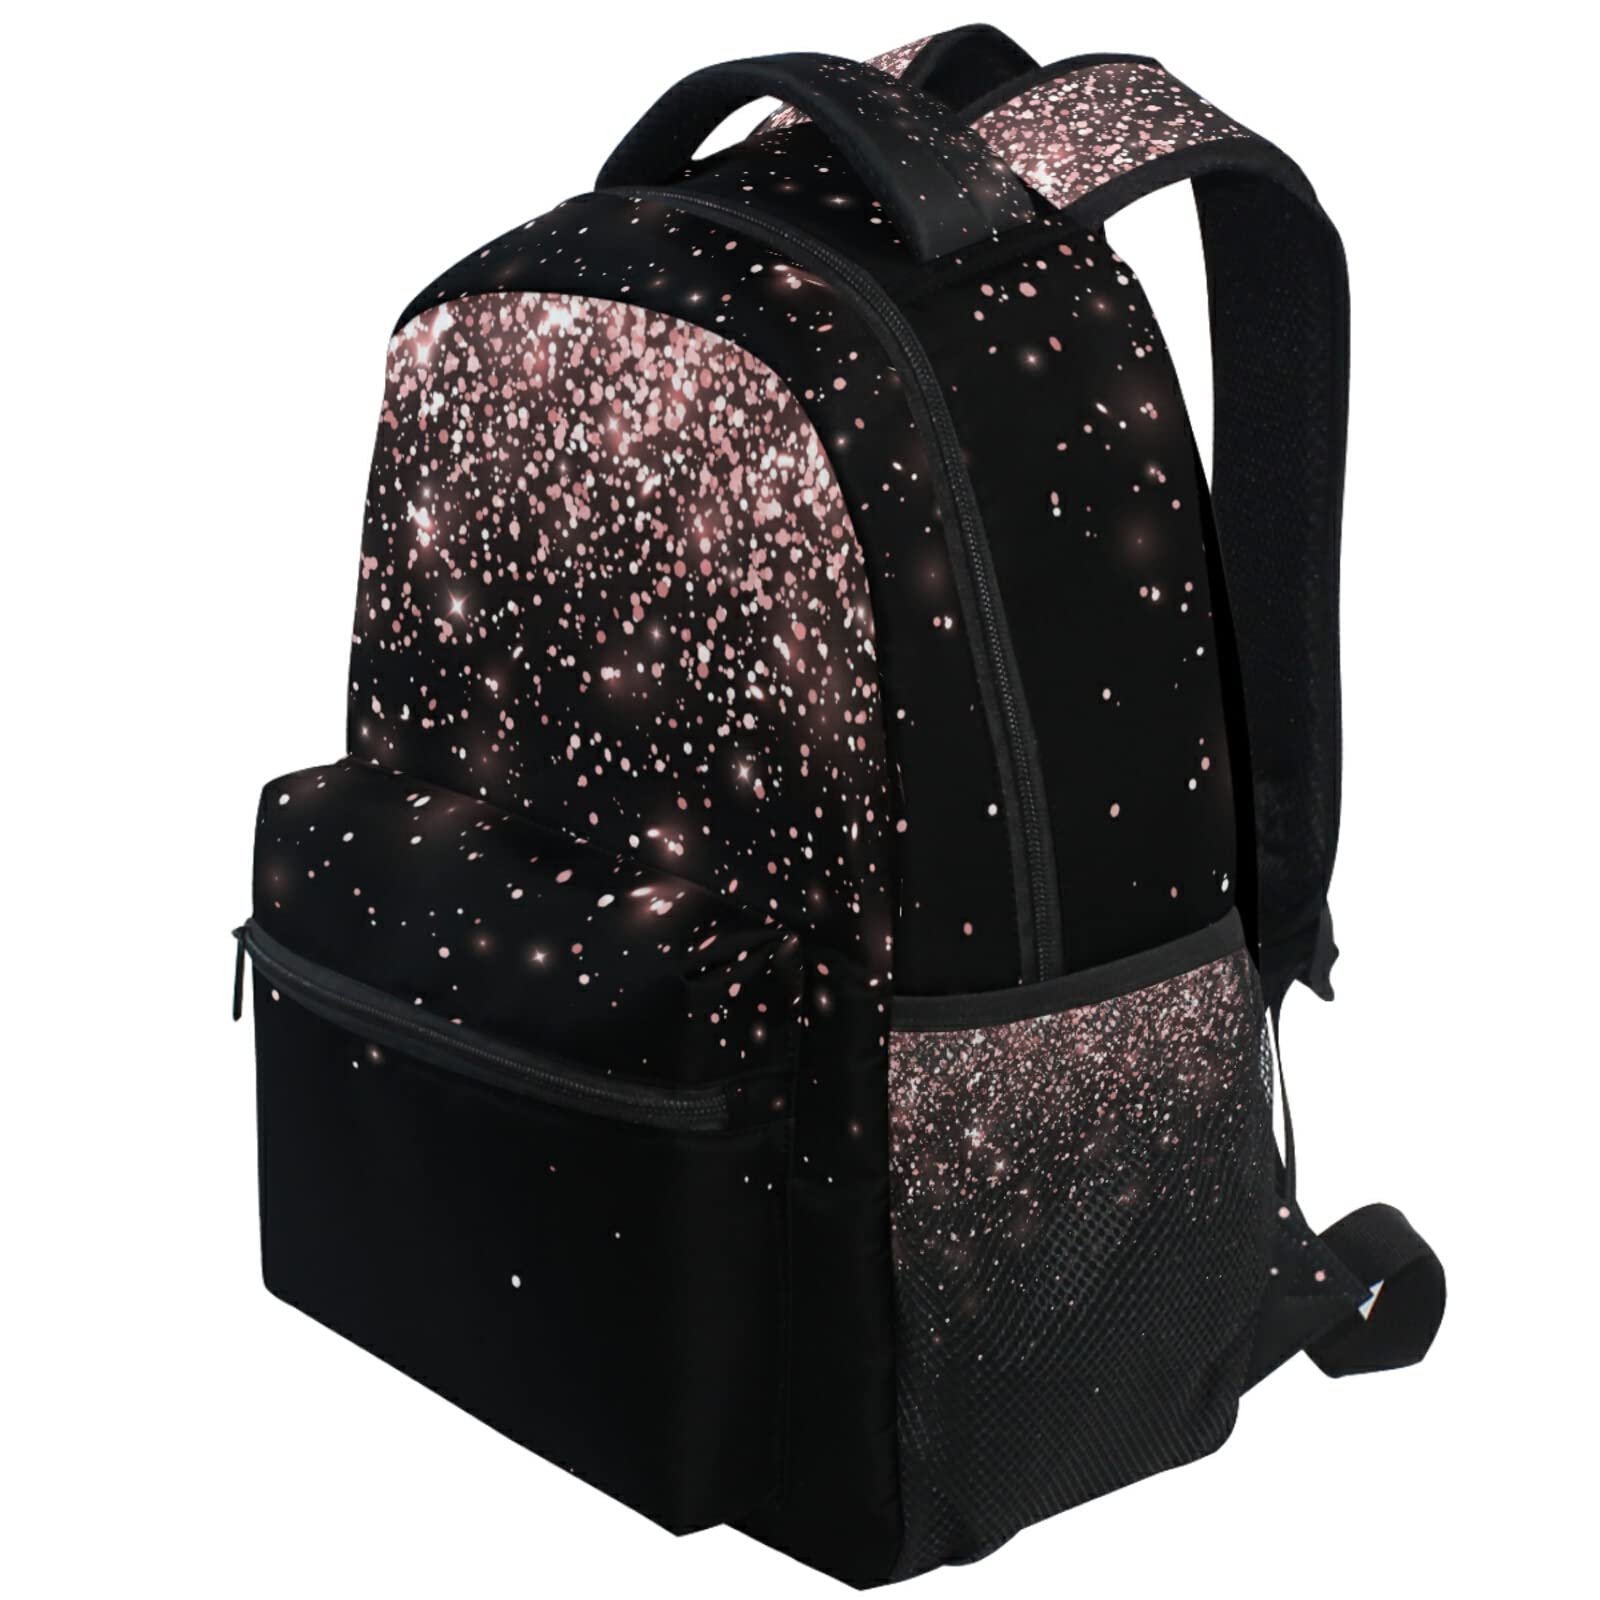 Pfrewn Rose Gold Black Glitter Backpacks for Girls Teens Women School Bookbags Backpack for Kids Students